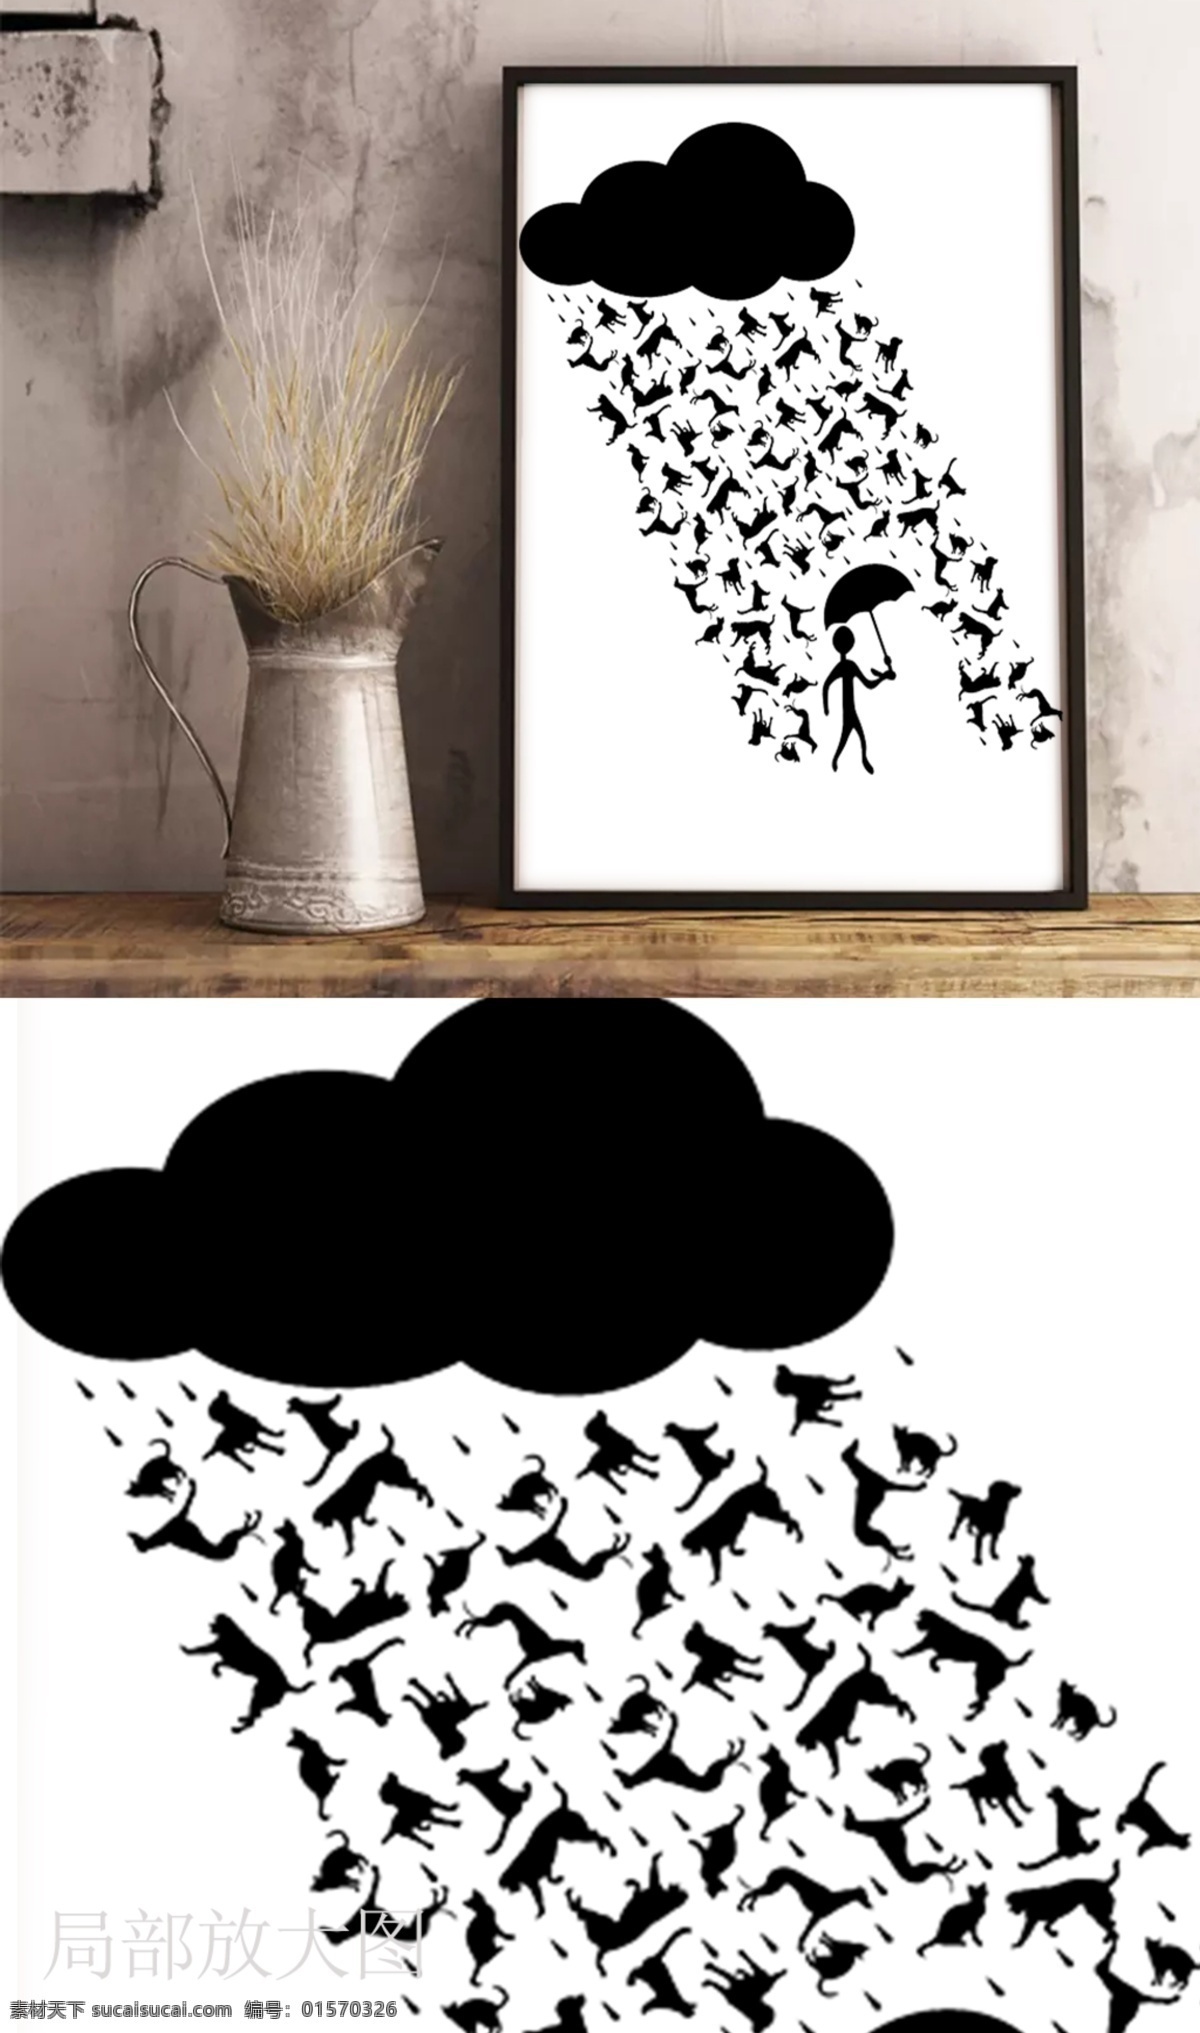 狗年 雨 创意 黑白 装饰画 创意装饰画 狗 狗年装饰画 黑白画 客厅挂画 云